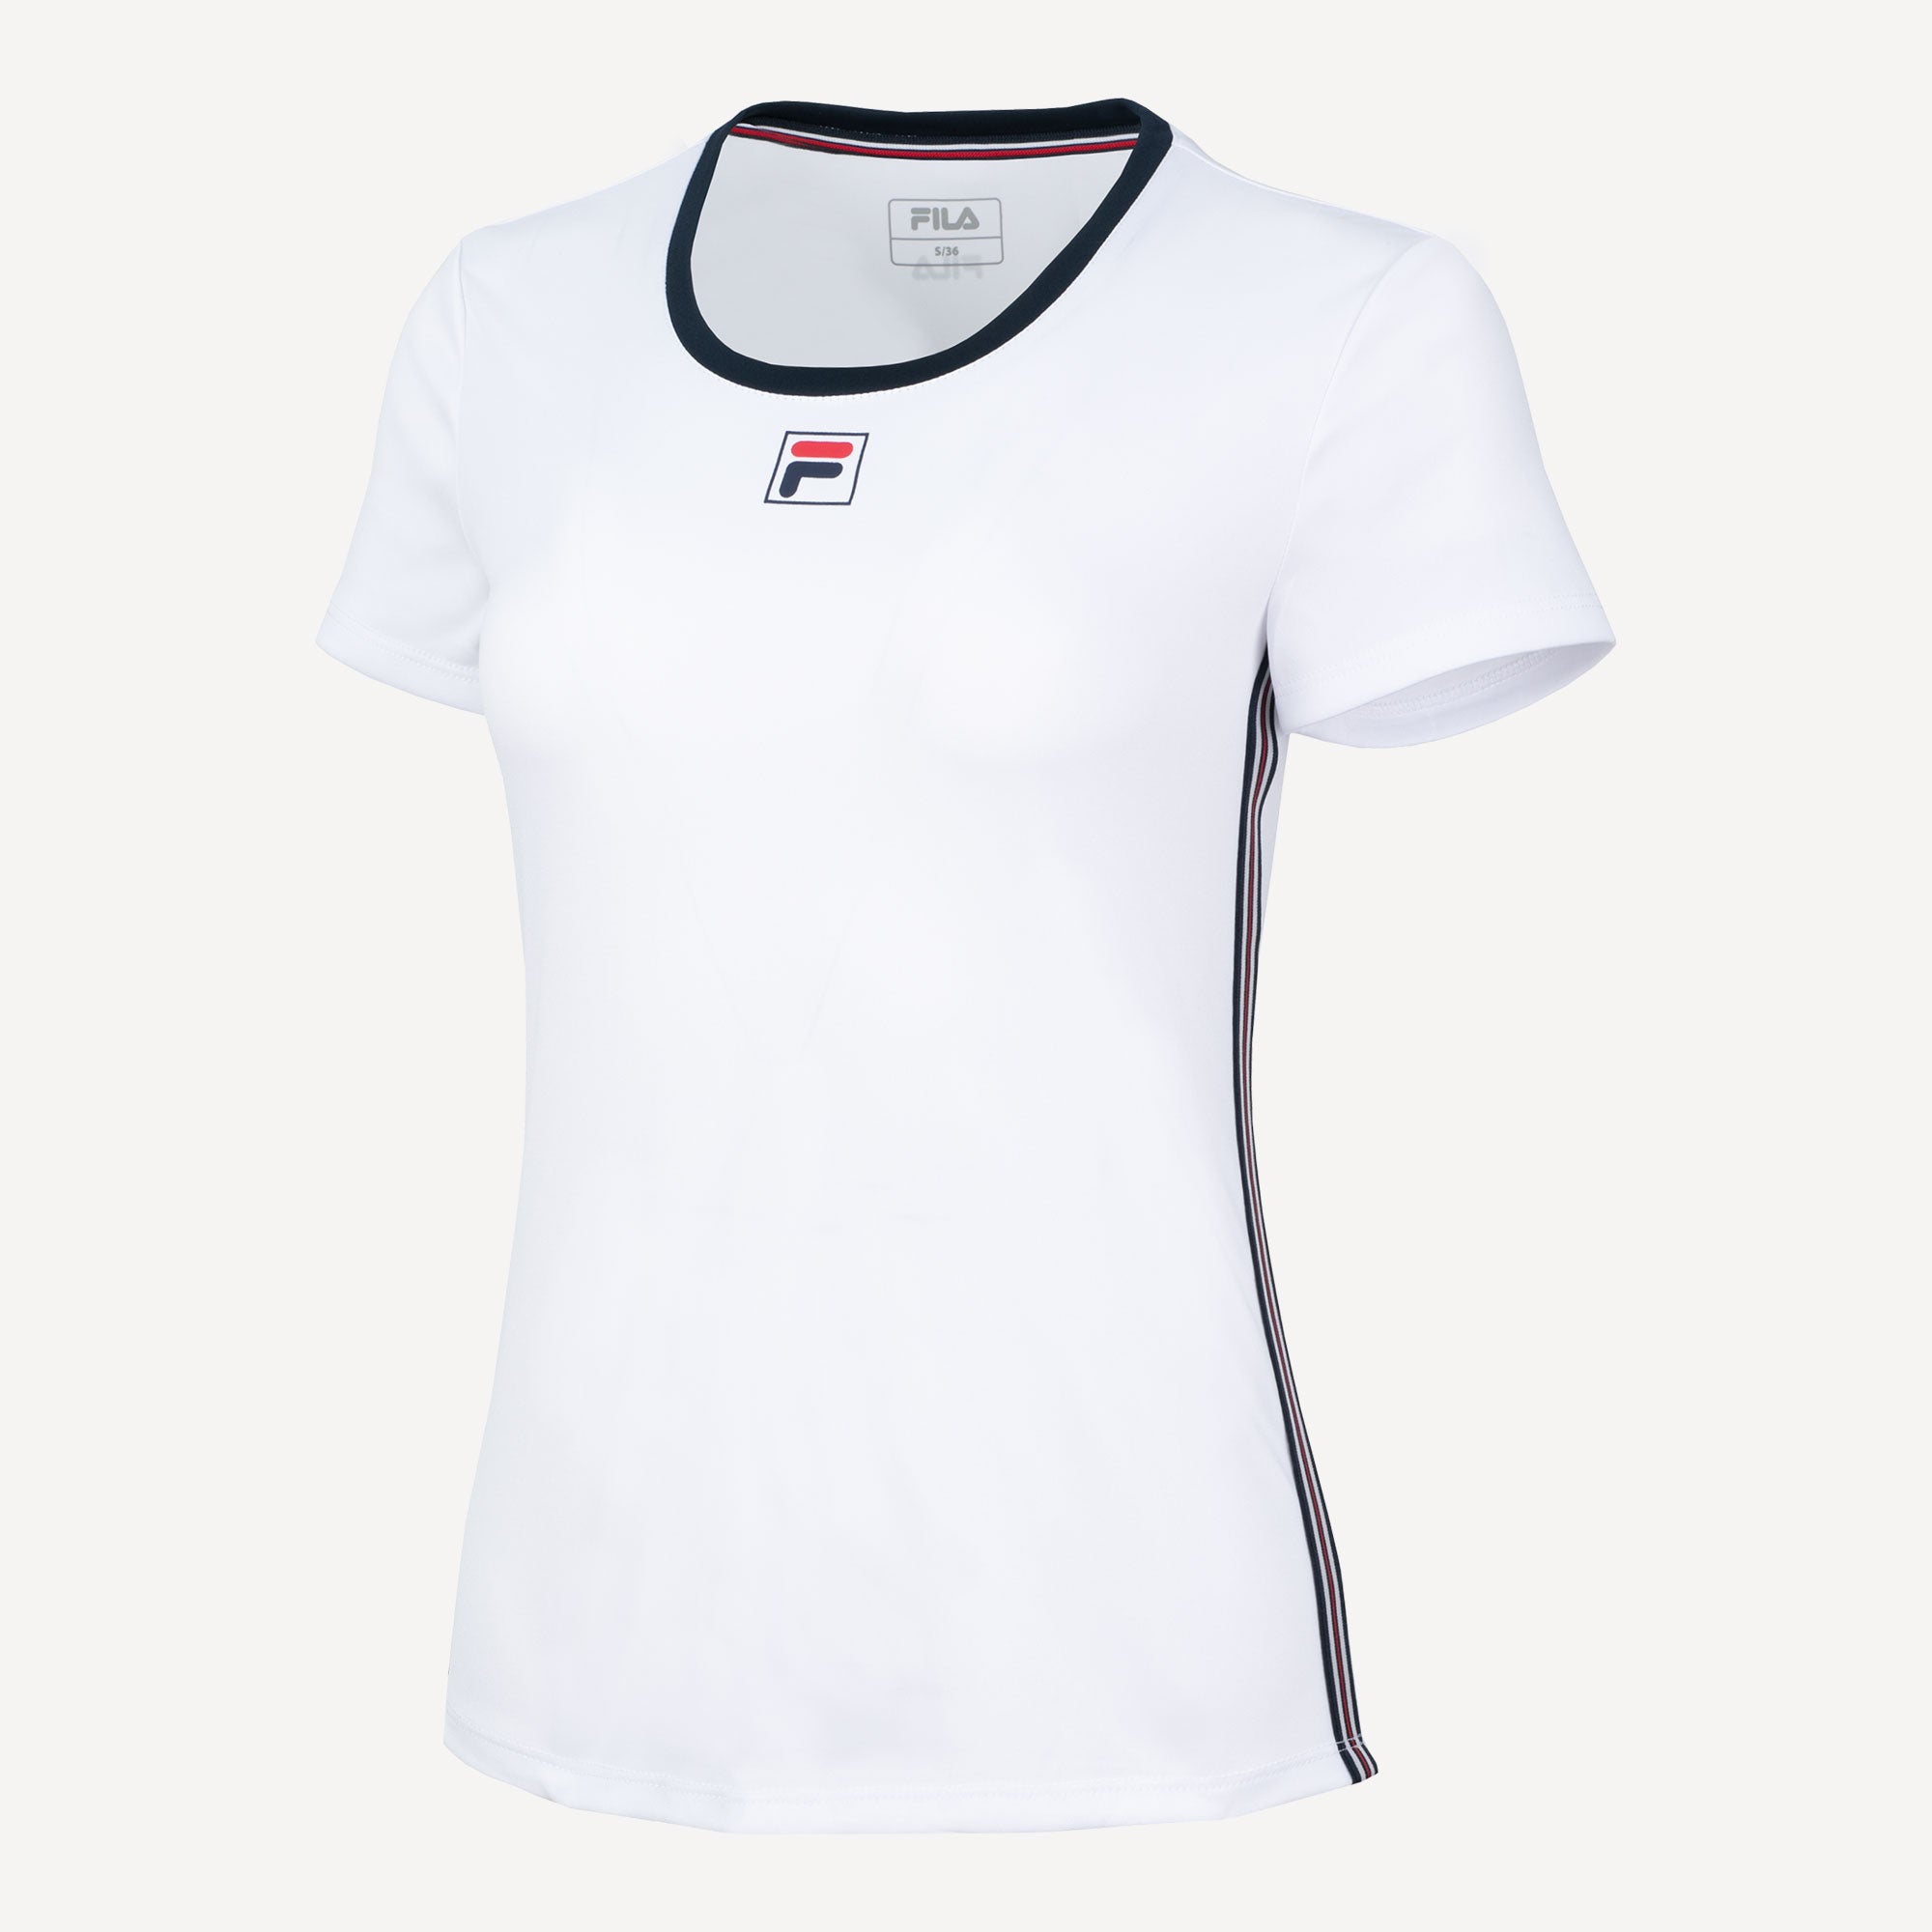 Fila Lucy Women's Tennis Shirt White (1)